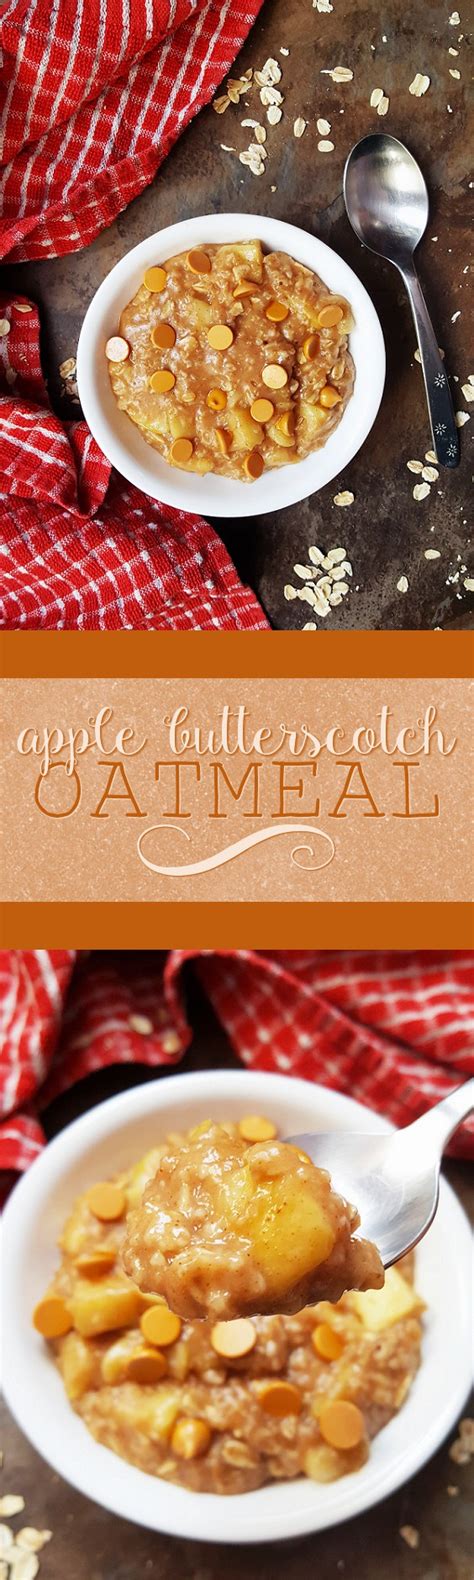 Soaking the raisins in warm water rehydrates. Apple Butterscotch Oatmeal | Food, Healthy breakfast recipes, Low calorie breakfast